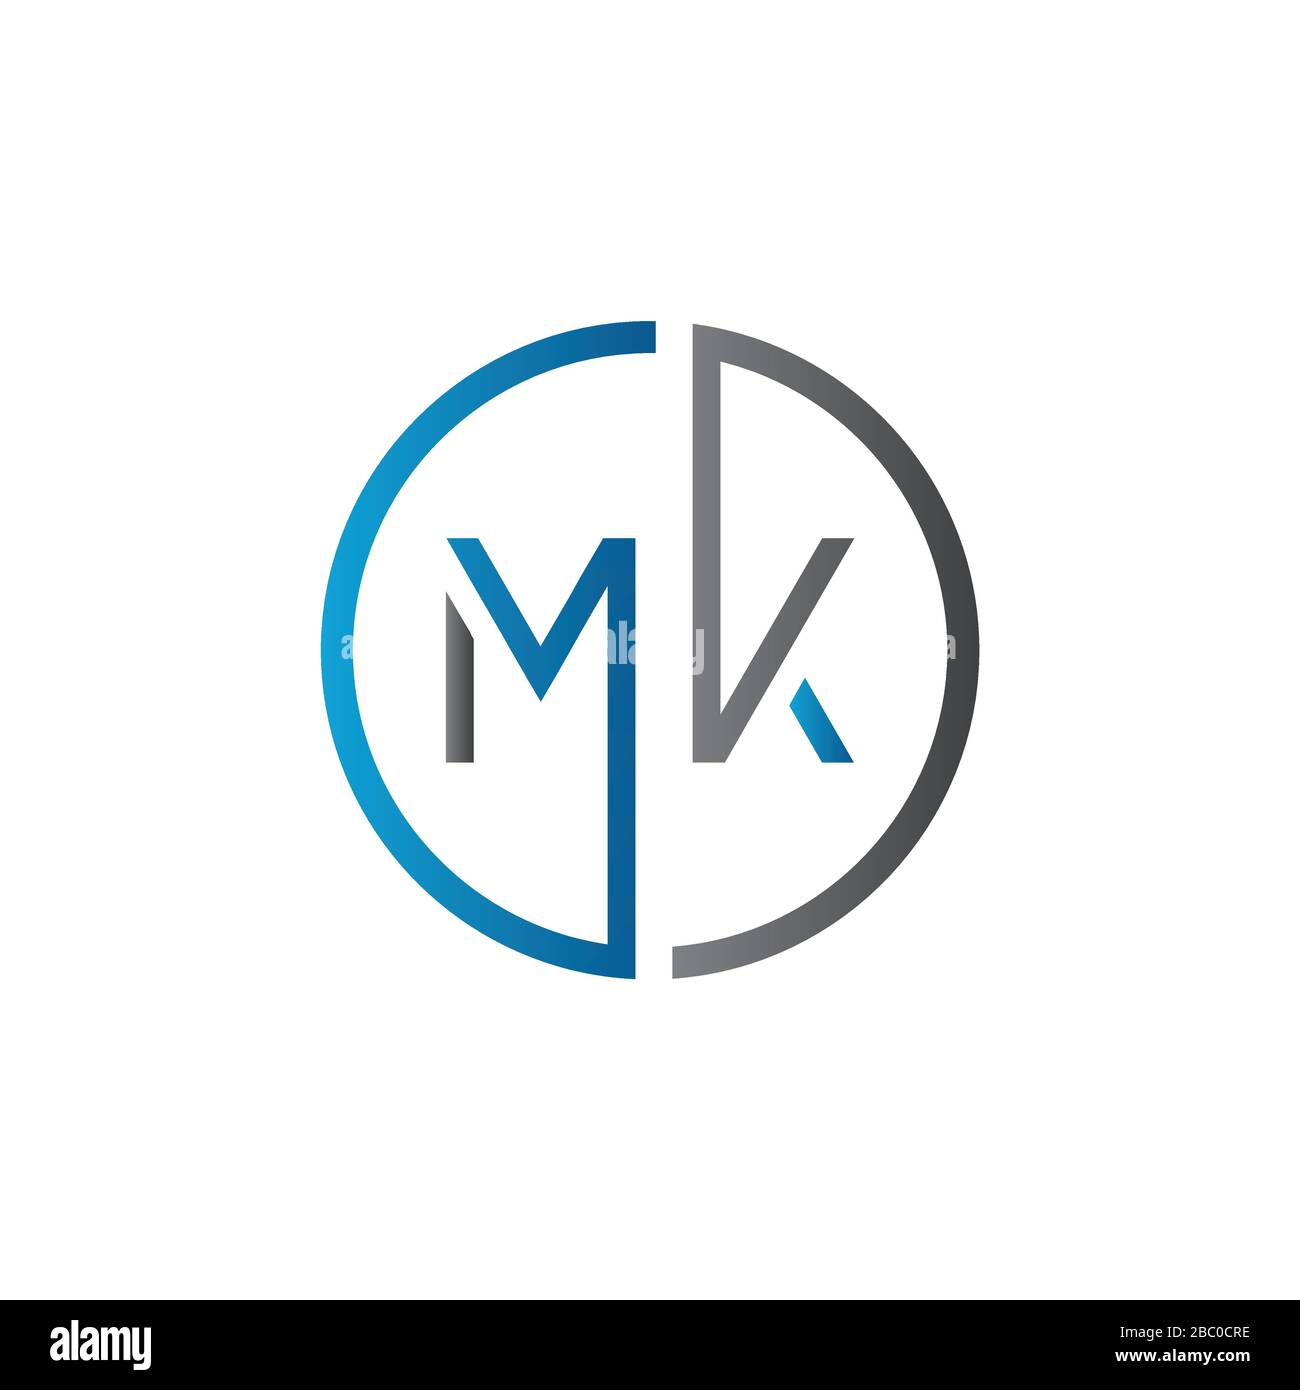 m&k logo